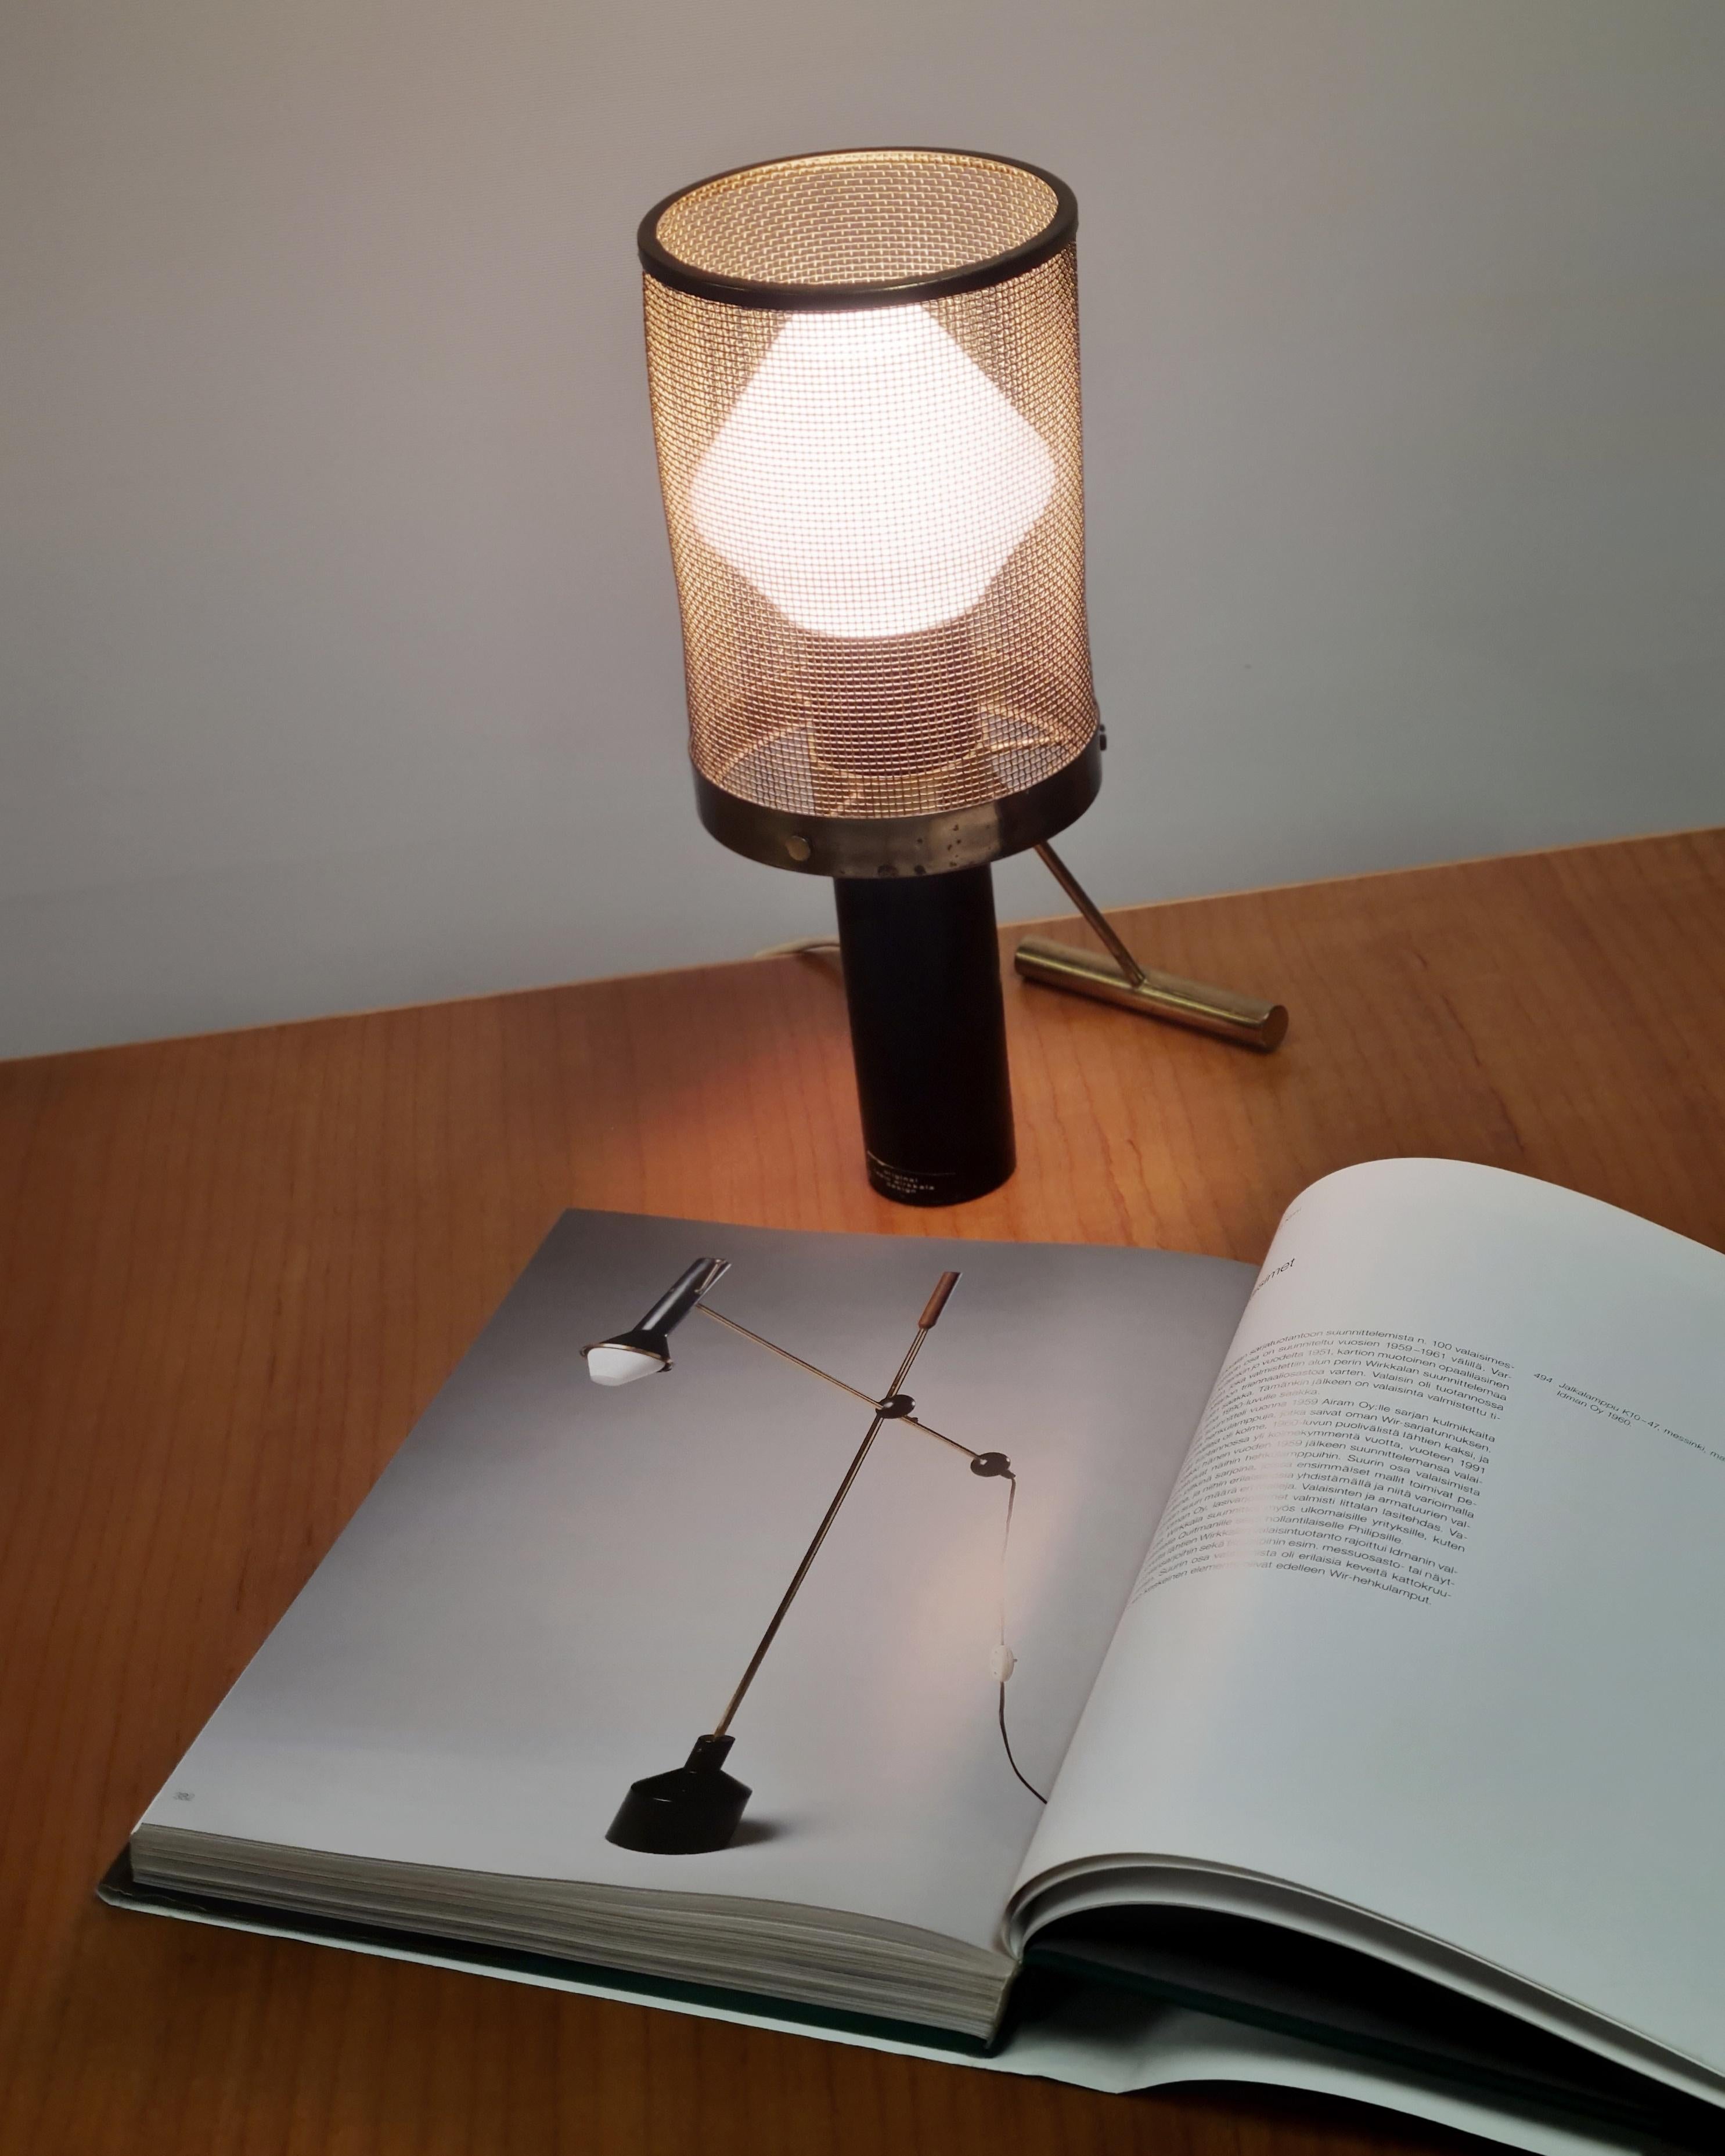 Tapio Wirkkala Table Lamp Model K11-81, Idman In Good Condition For Sale In Helsinki, FI